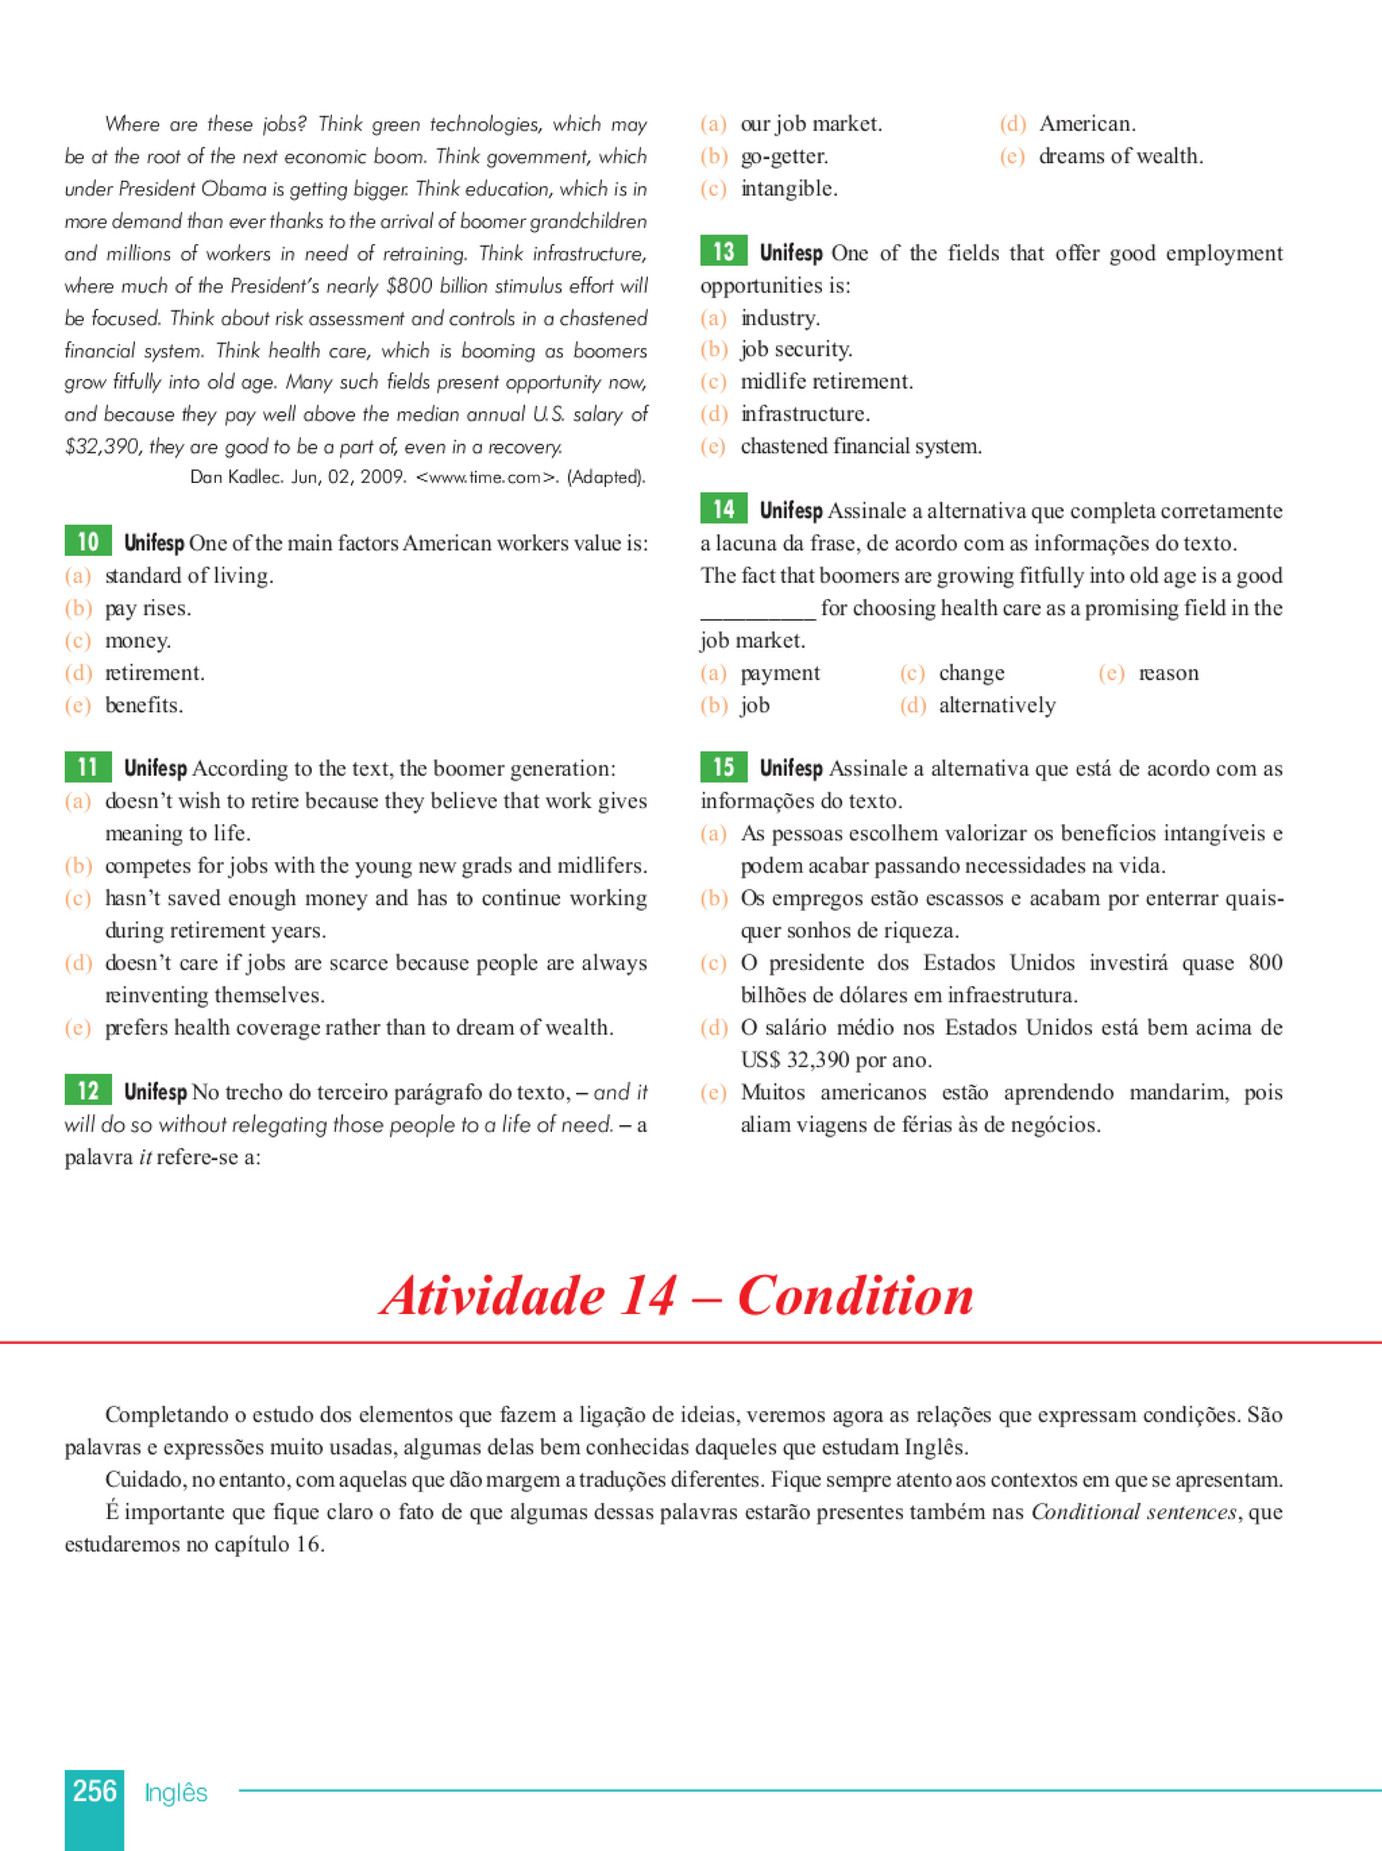 My publications - Inglês - Página 206-207 - Created with Publitas.com